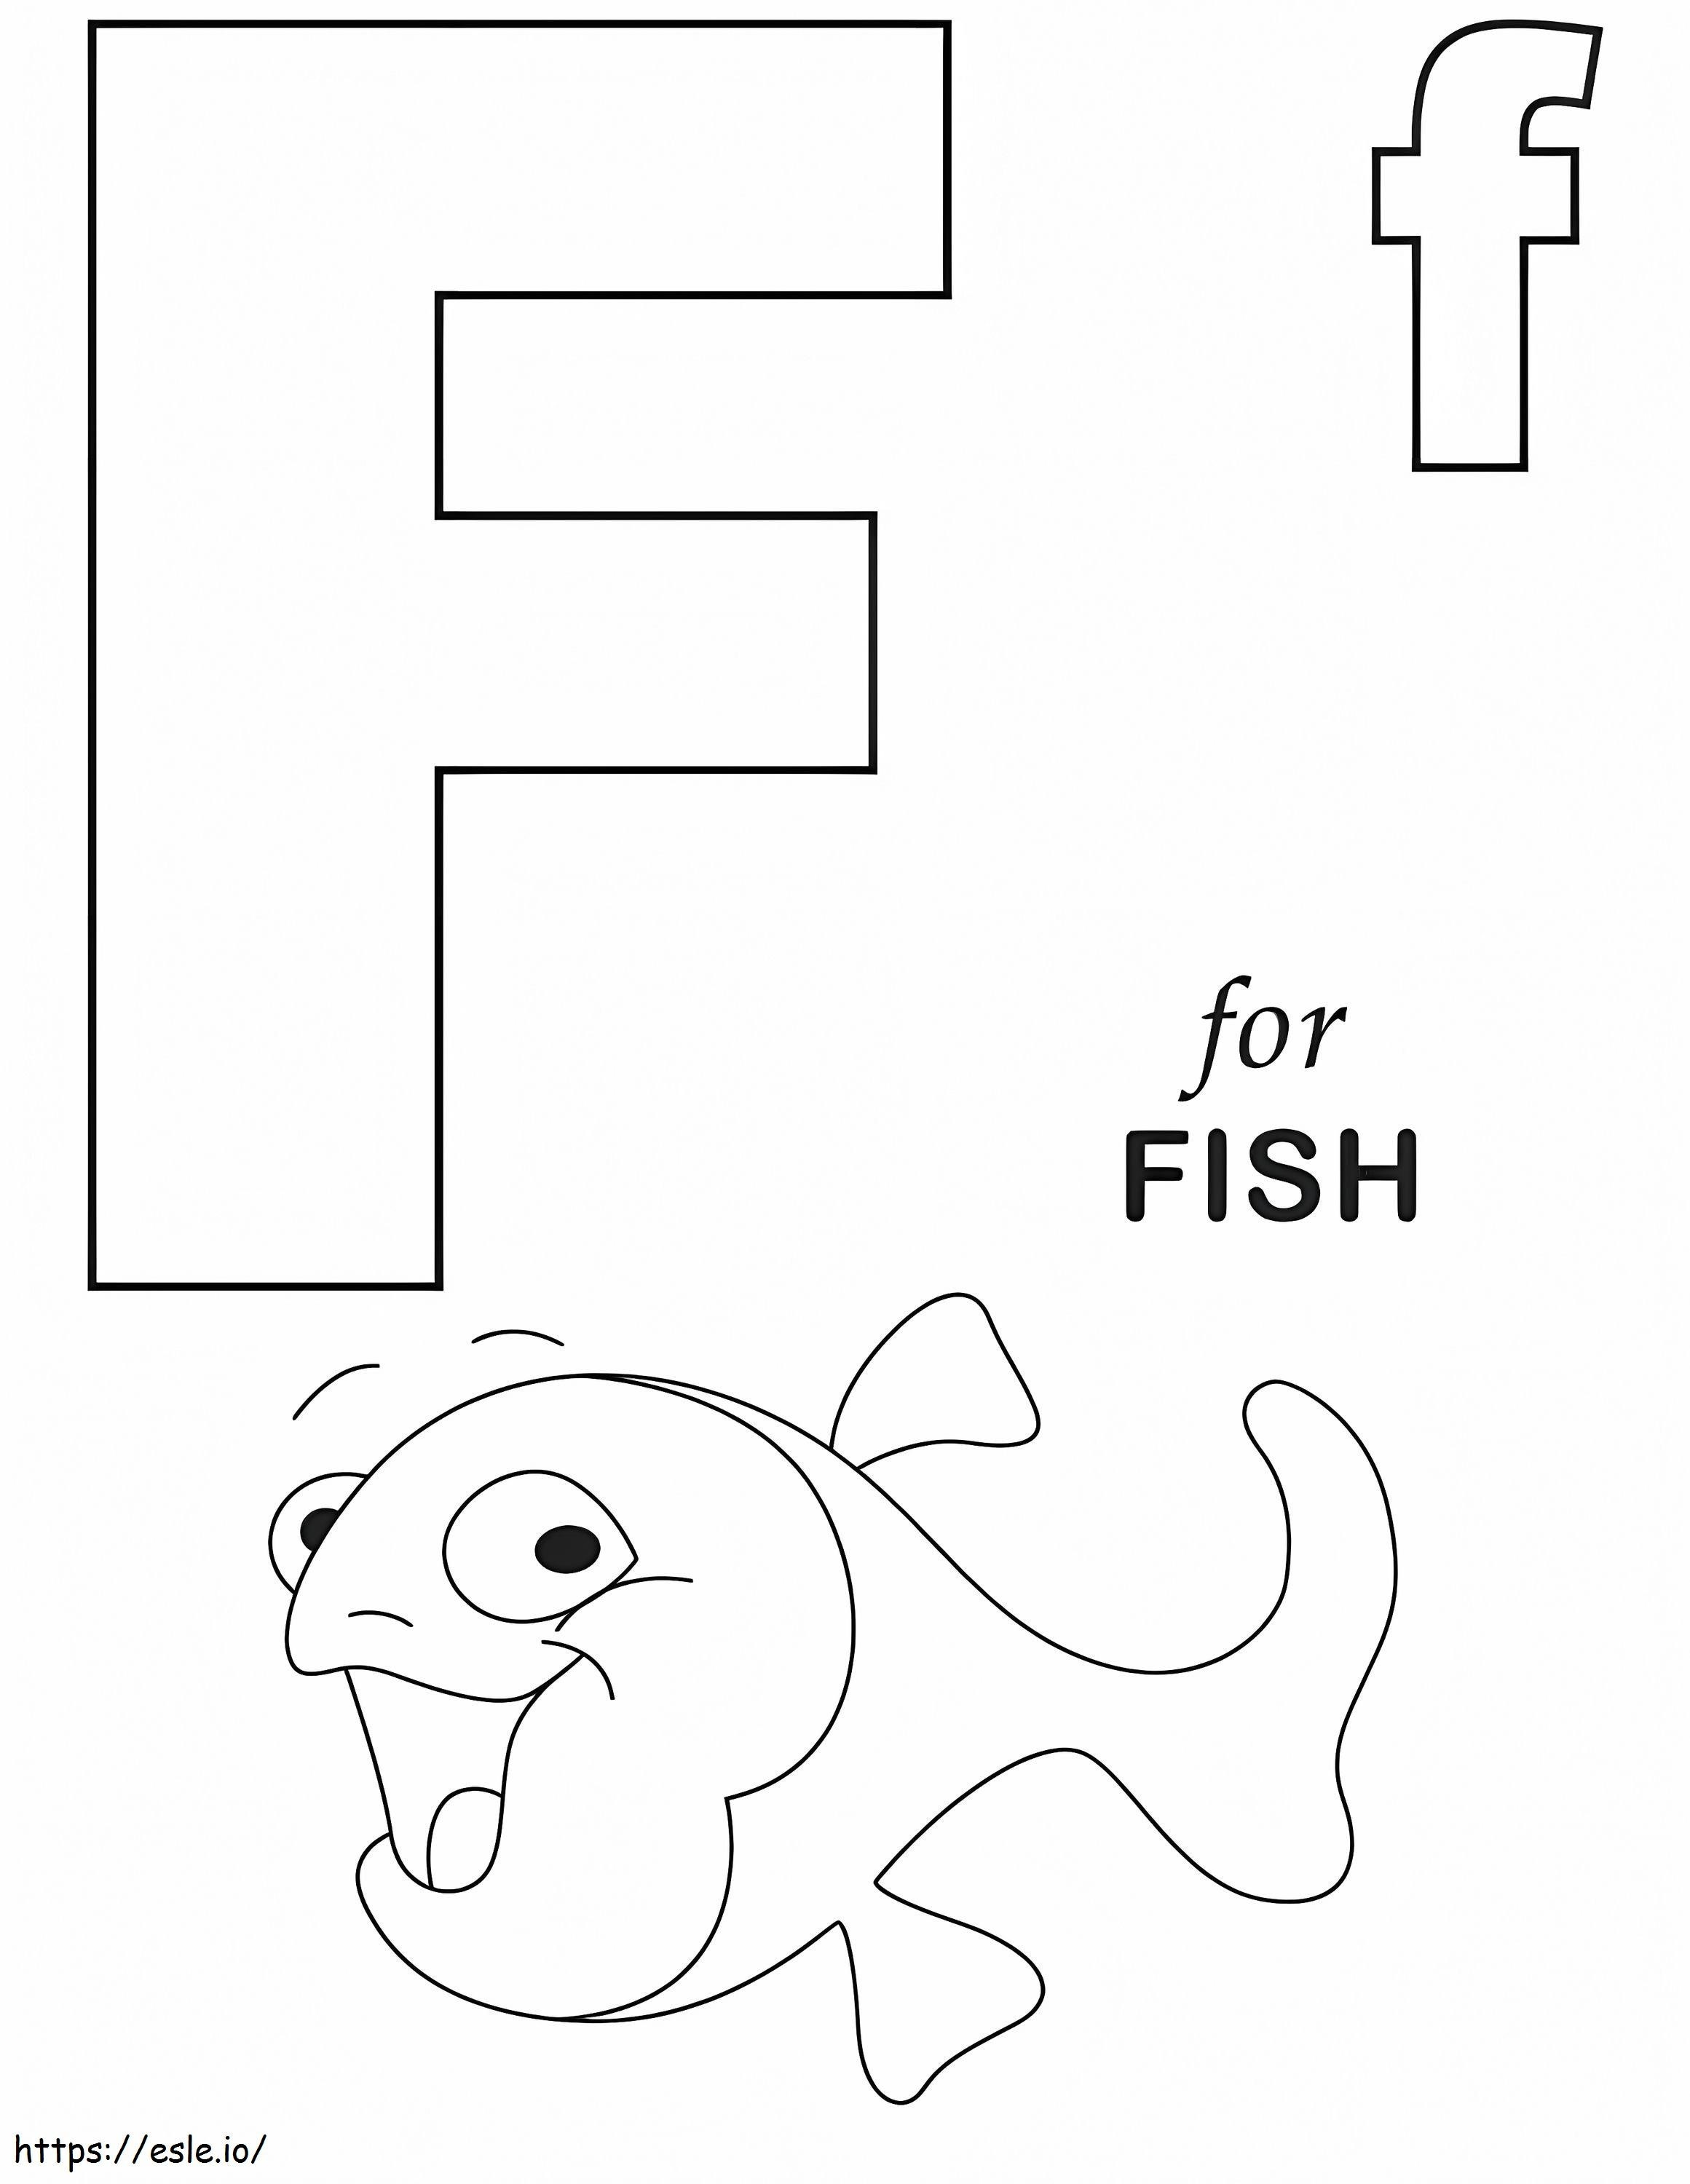 Fischbuchstabe F 1 ausmalbilder